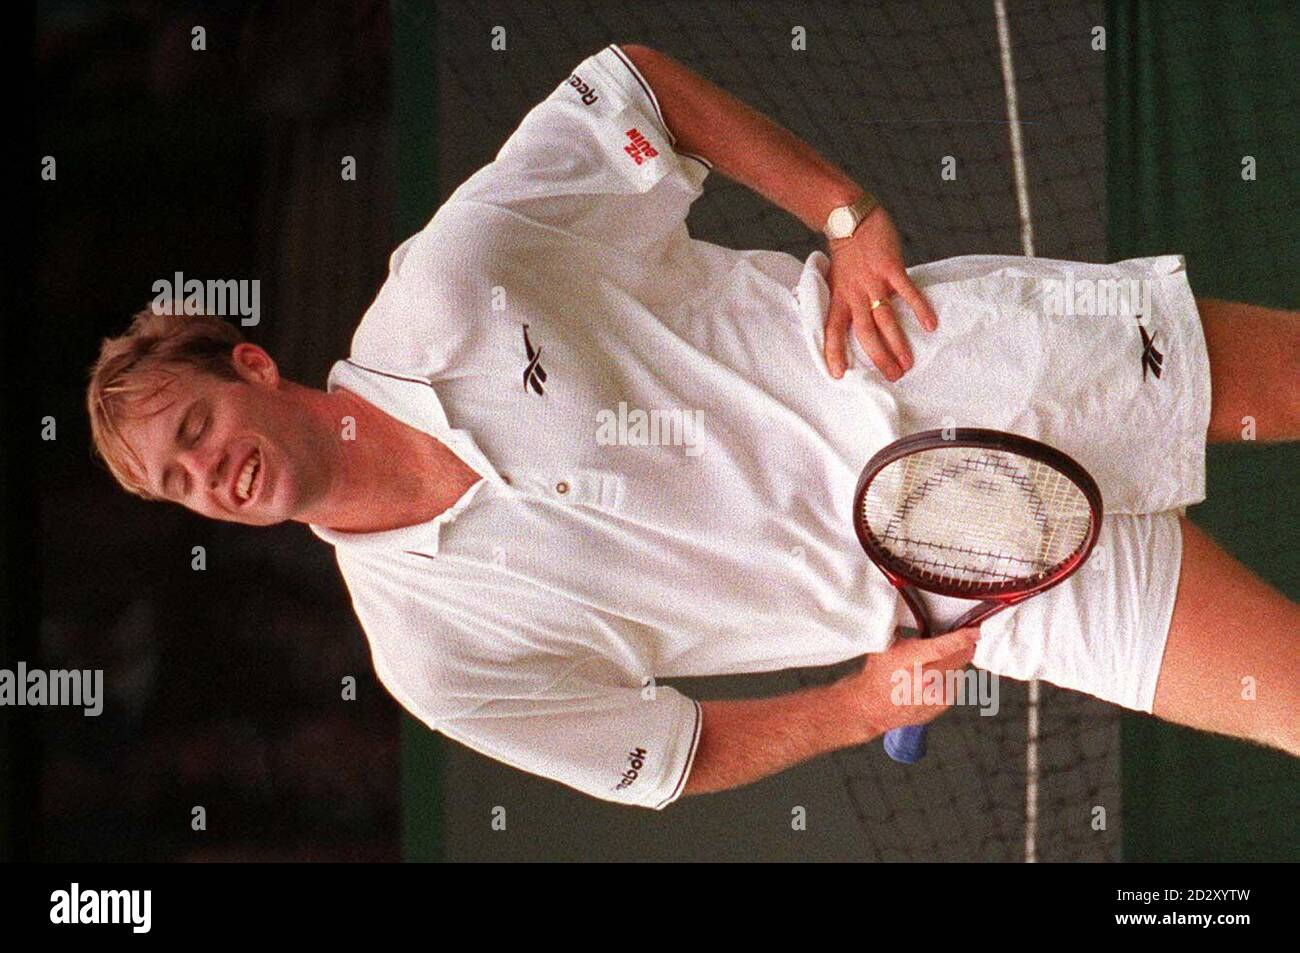 Der britische Mark Petchey schafft ein Lächeln, obwohl er heute Nachmittag (Montag) auf dem 1. Gericht gegen den deutschen Boris Becker einen Punkt verloren hat. Becker gewann das Spiel 6-3 6-3 mit 6:2. Foto von Fiona Hanson/PA. Stockfoto